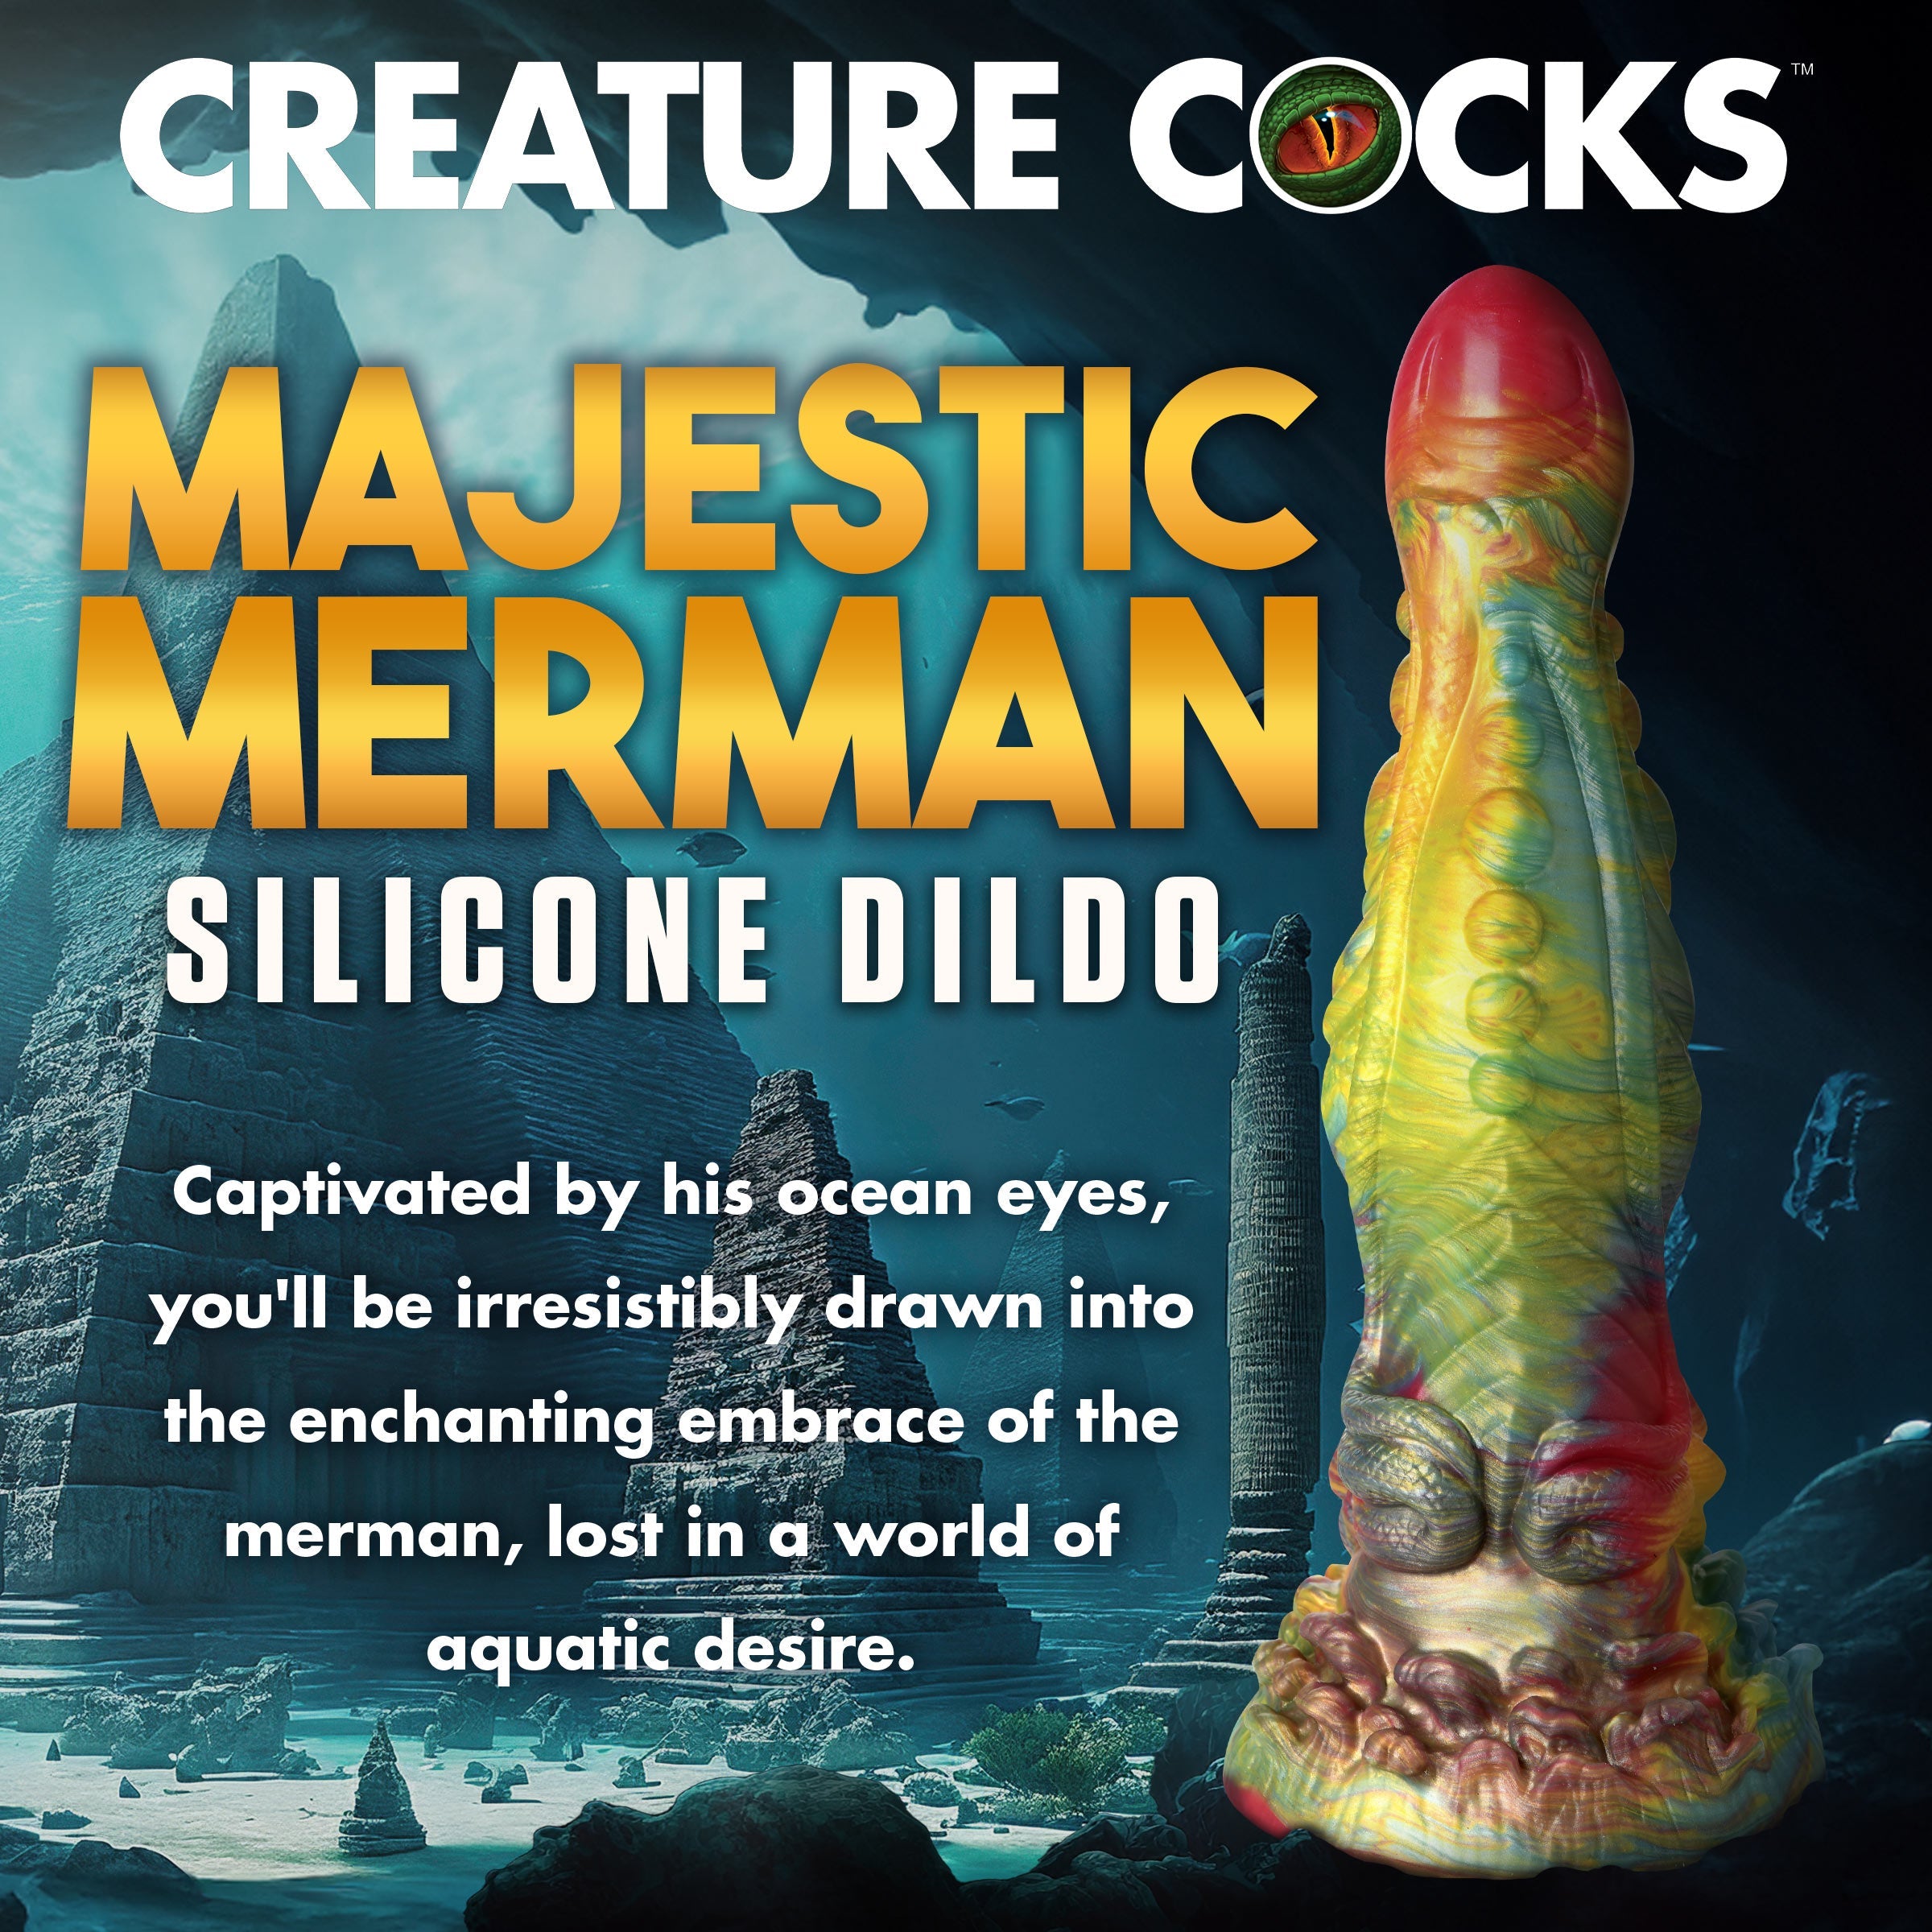 Majestic Merman Silicone Dildo